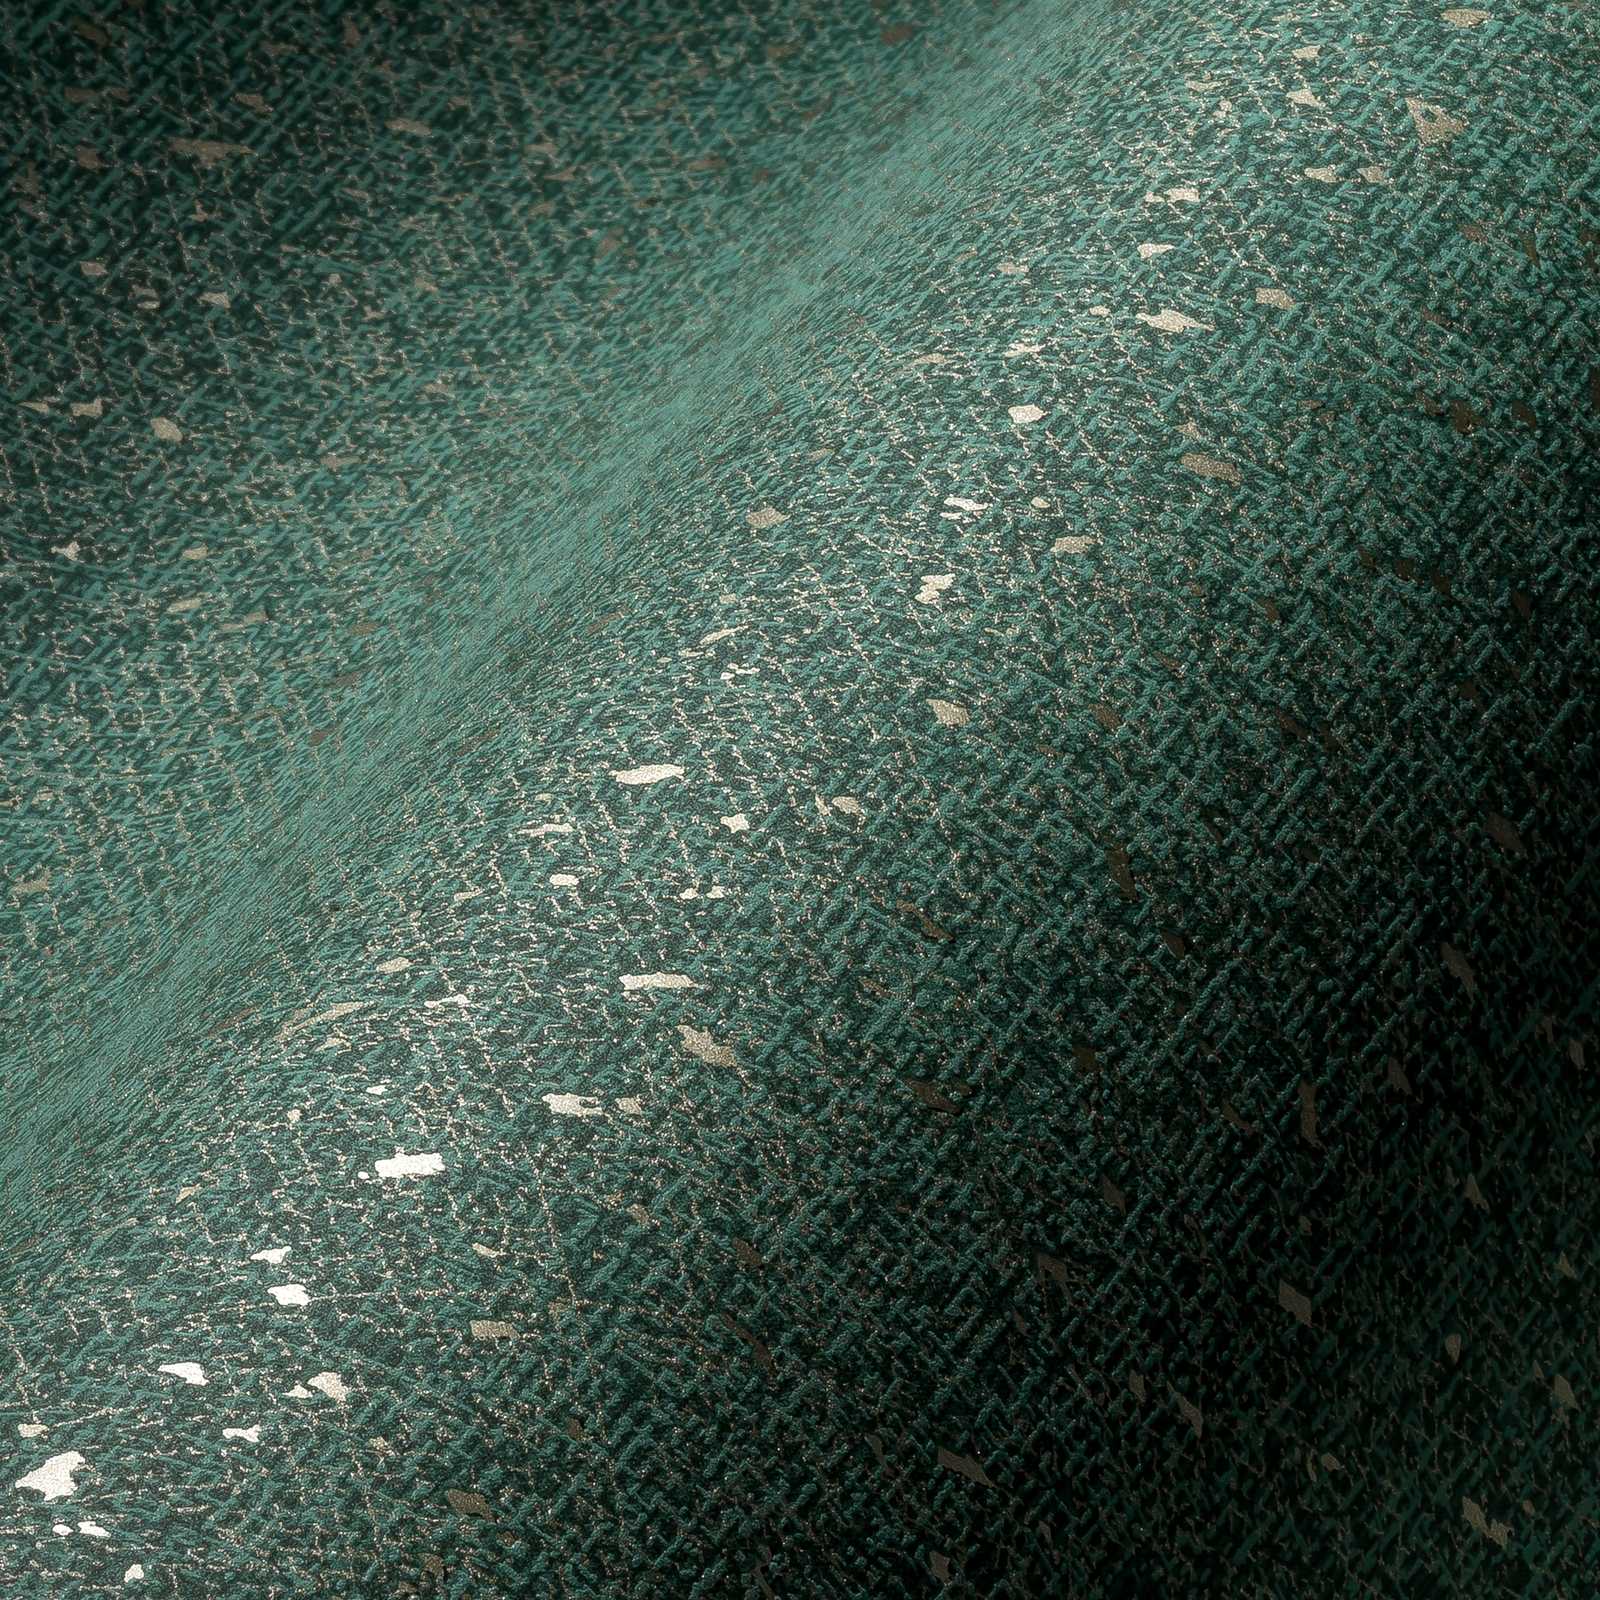             Tapete mit textiler Struktur und Metallic Akzent – Grün, Metallic
        